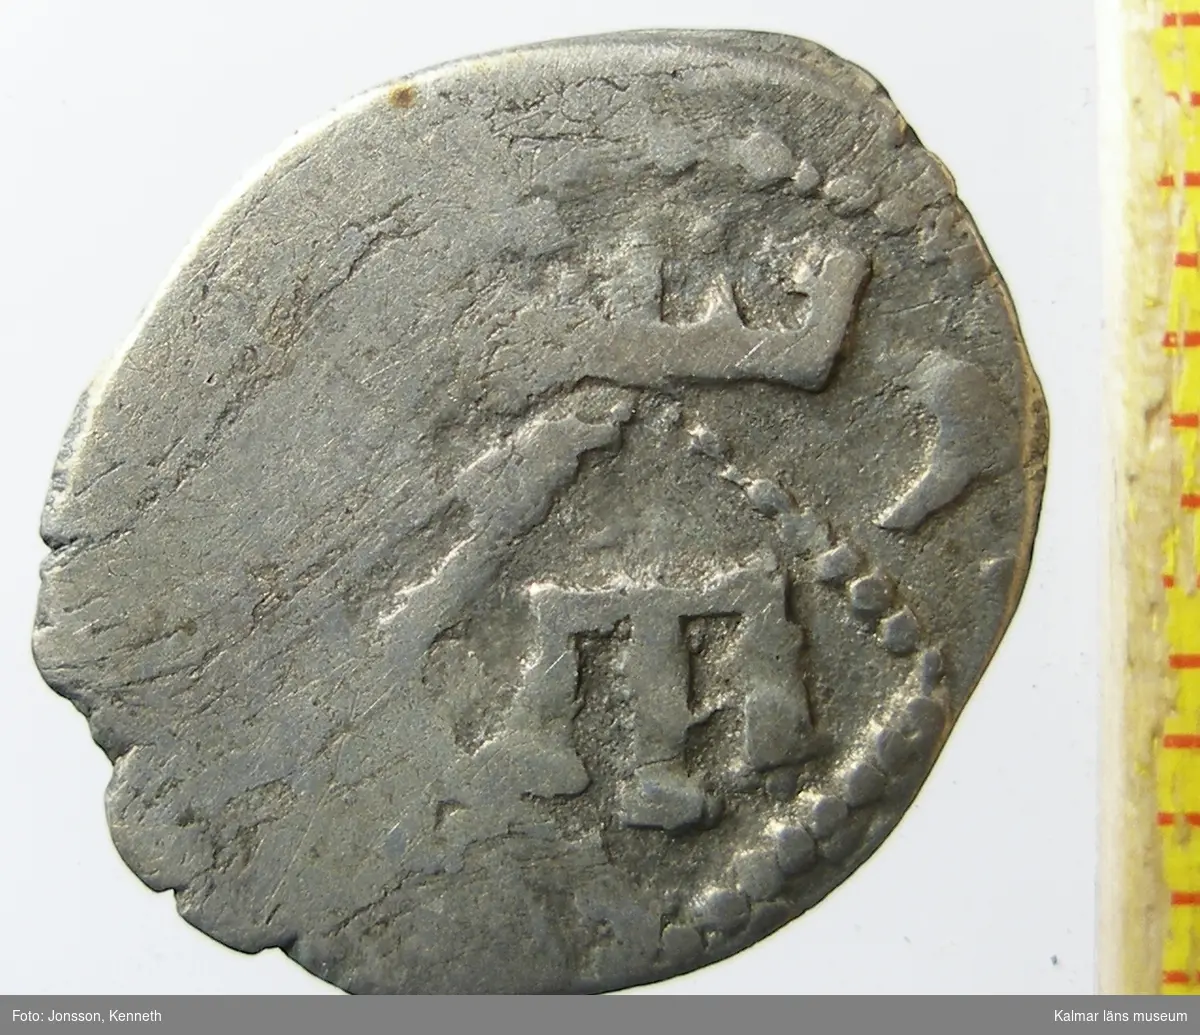 KLM 24882:1 Mynt, av silver. Korsfararmynt. Medeltid. Kaffa, asper 1300-tal. Schlumberger pl. XVII:31. 
Präglat i Kaffa (på Krim) på 1300-talet. Valören är asper. Kaffa var då en koloni till Genua.